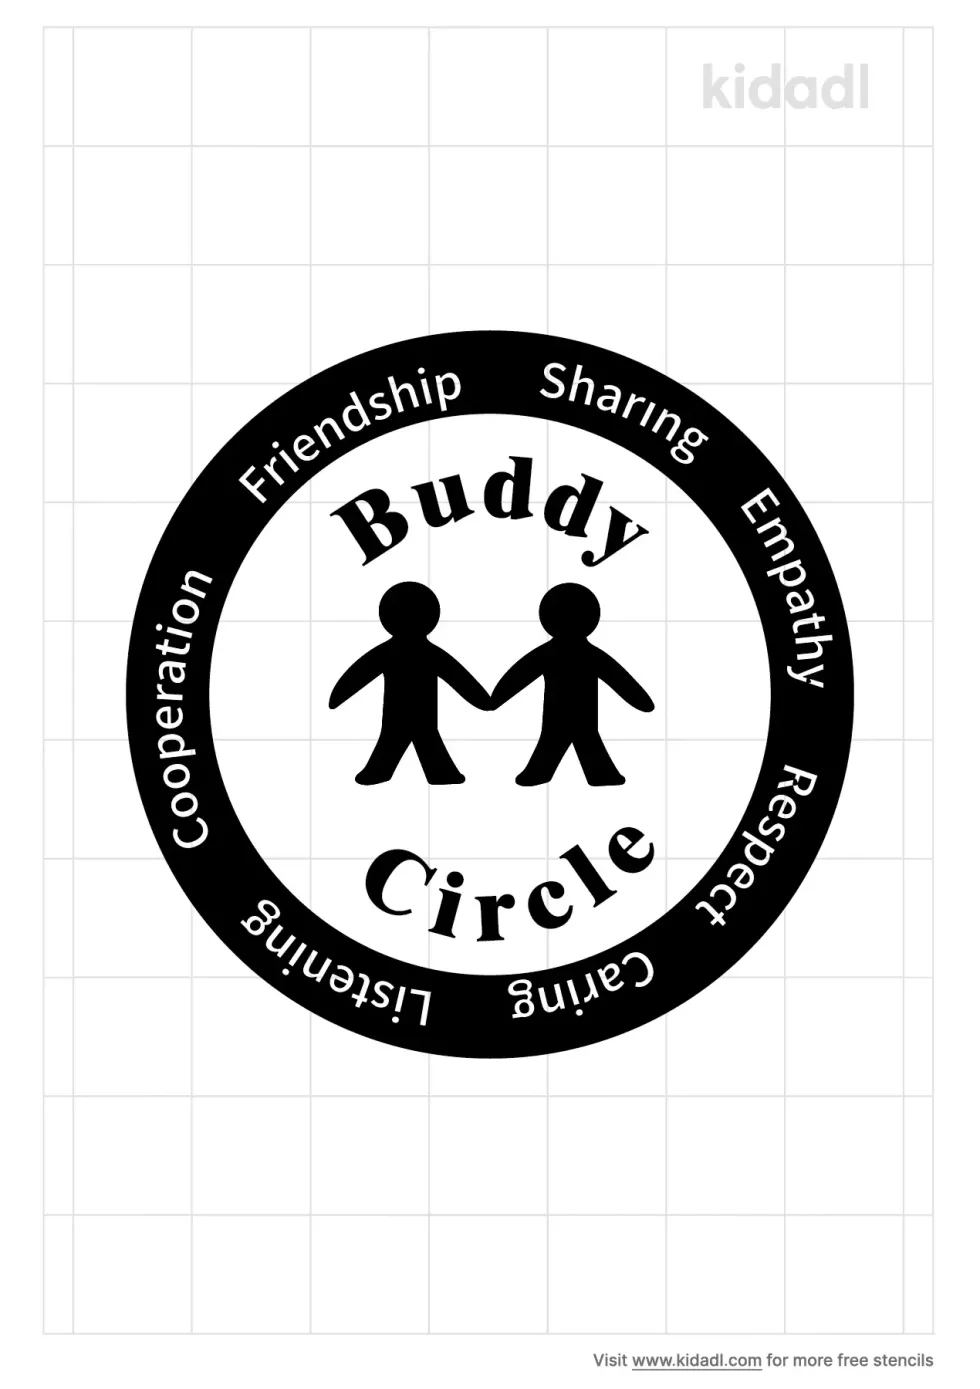 Buddy Circle